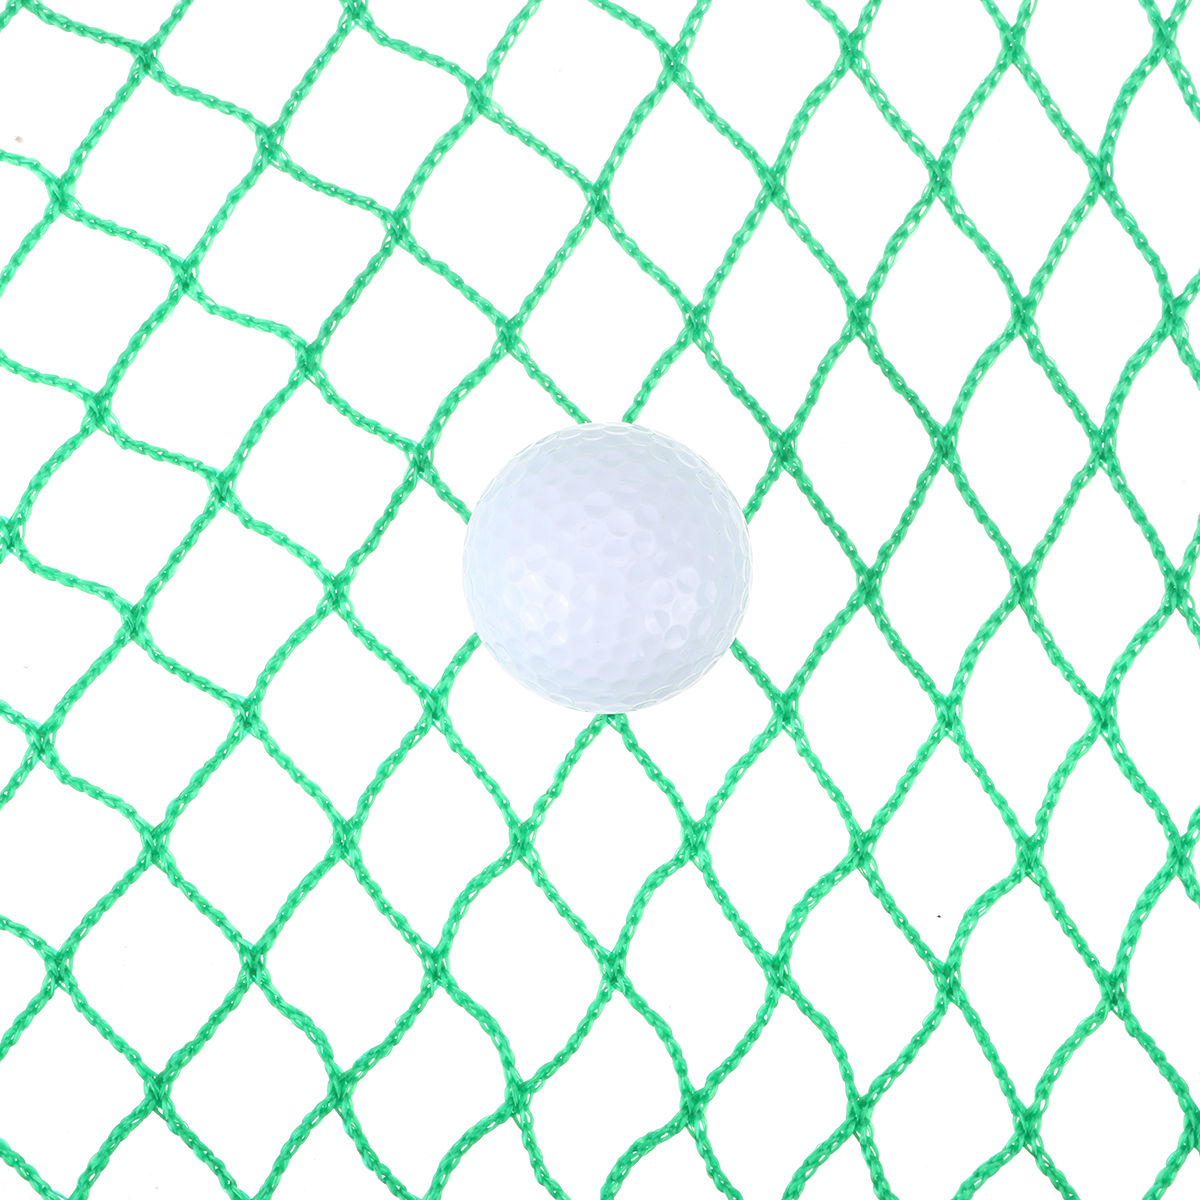 4x4m-25cm-Aperture-Golf-Net-Green-Practice-Screen-Netting-Golf-Training-Net-1670159-3